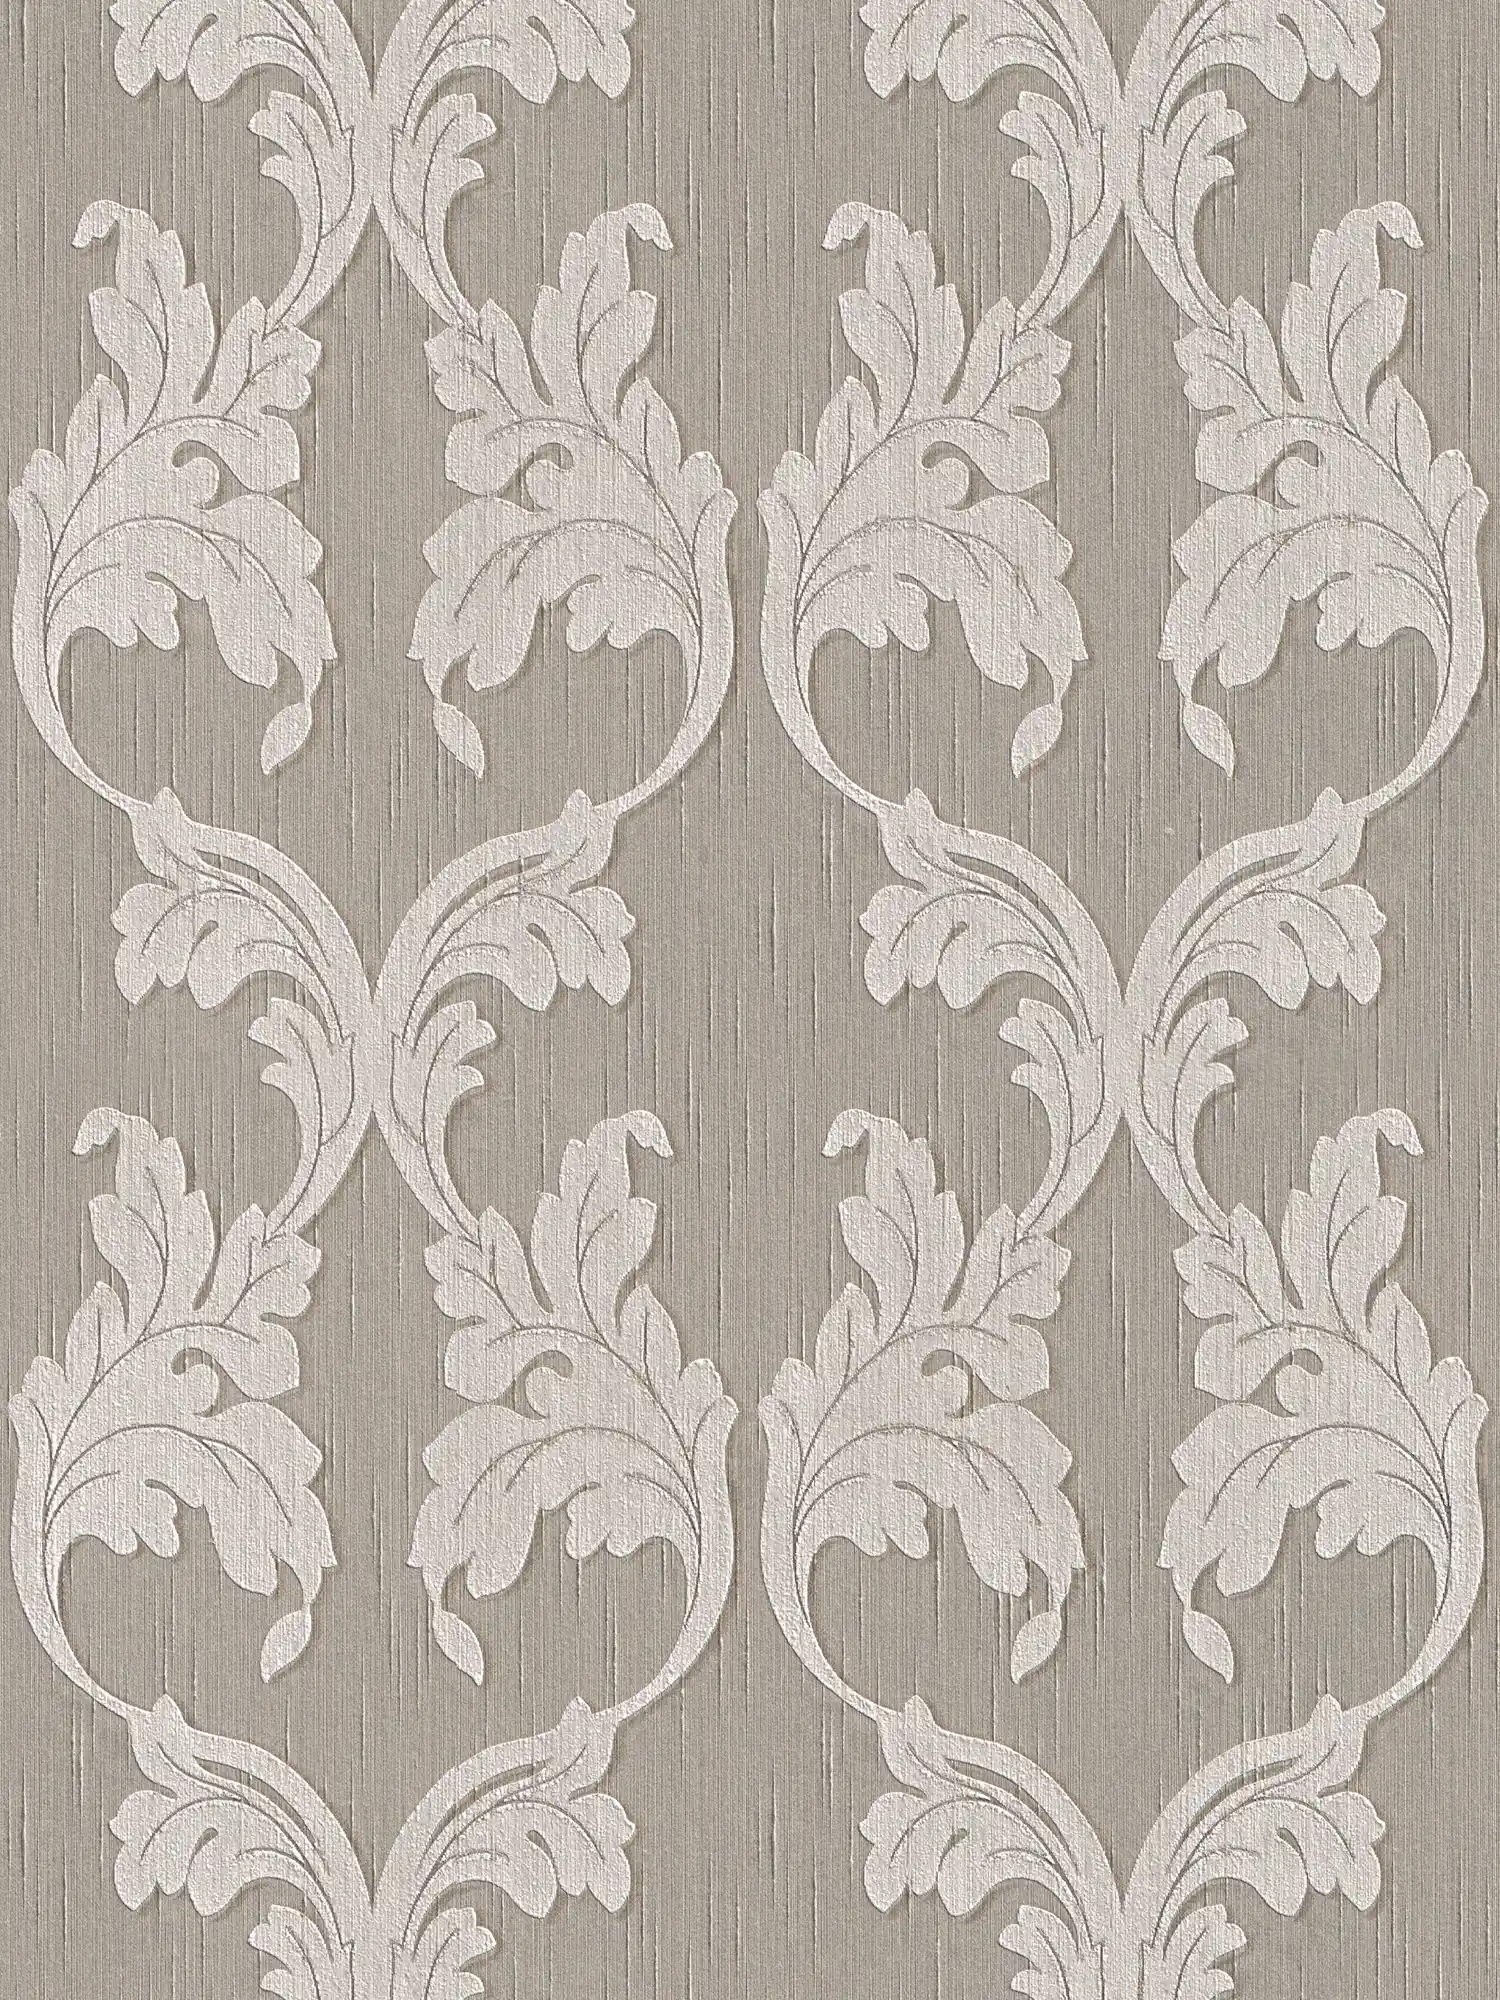 papier peint en papier baroque avec ornements floraux à rinceaux - gris, beige
